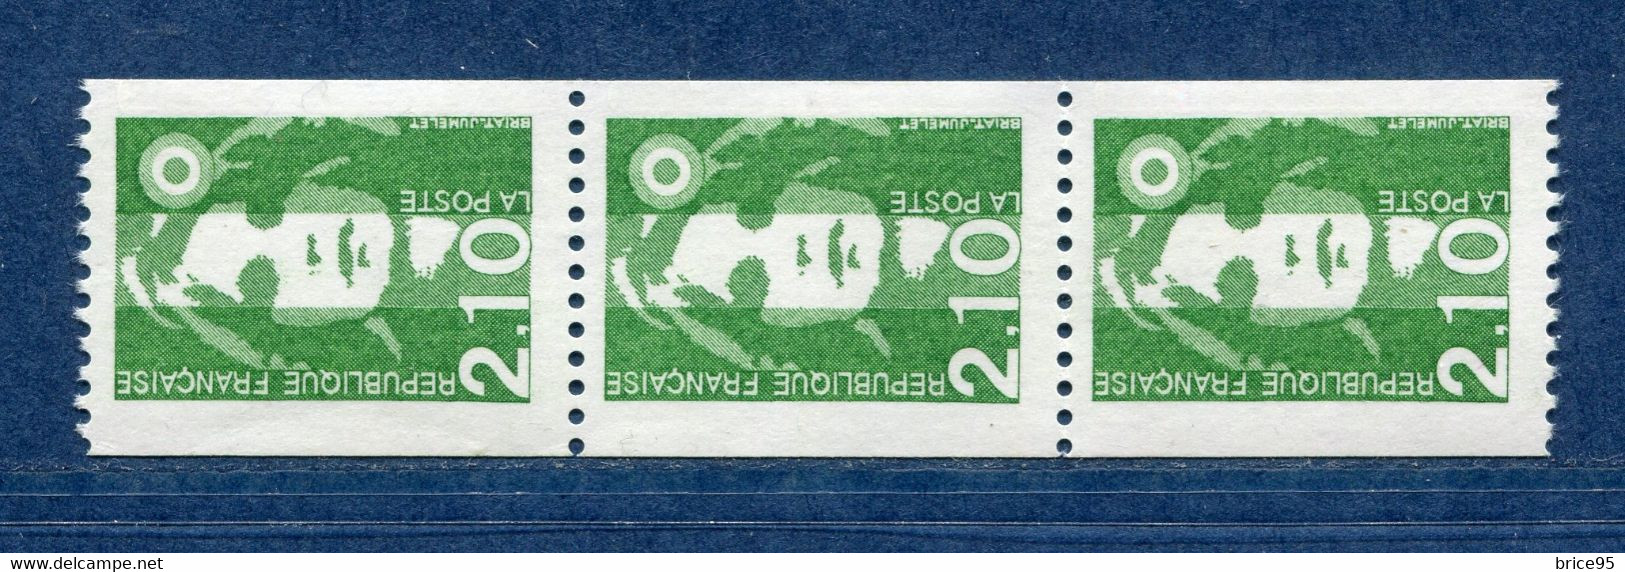 ⭐ France - Variété - YT N° 2627 A - Numéro Rouge - Couleurs - Pétouilles - Neuf Sans Charnière - 1990 ⭐ - Unused Stamps